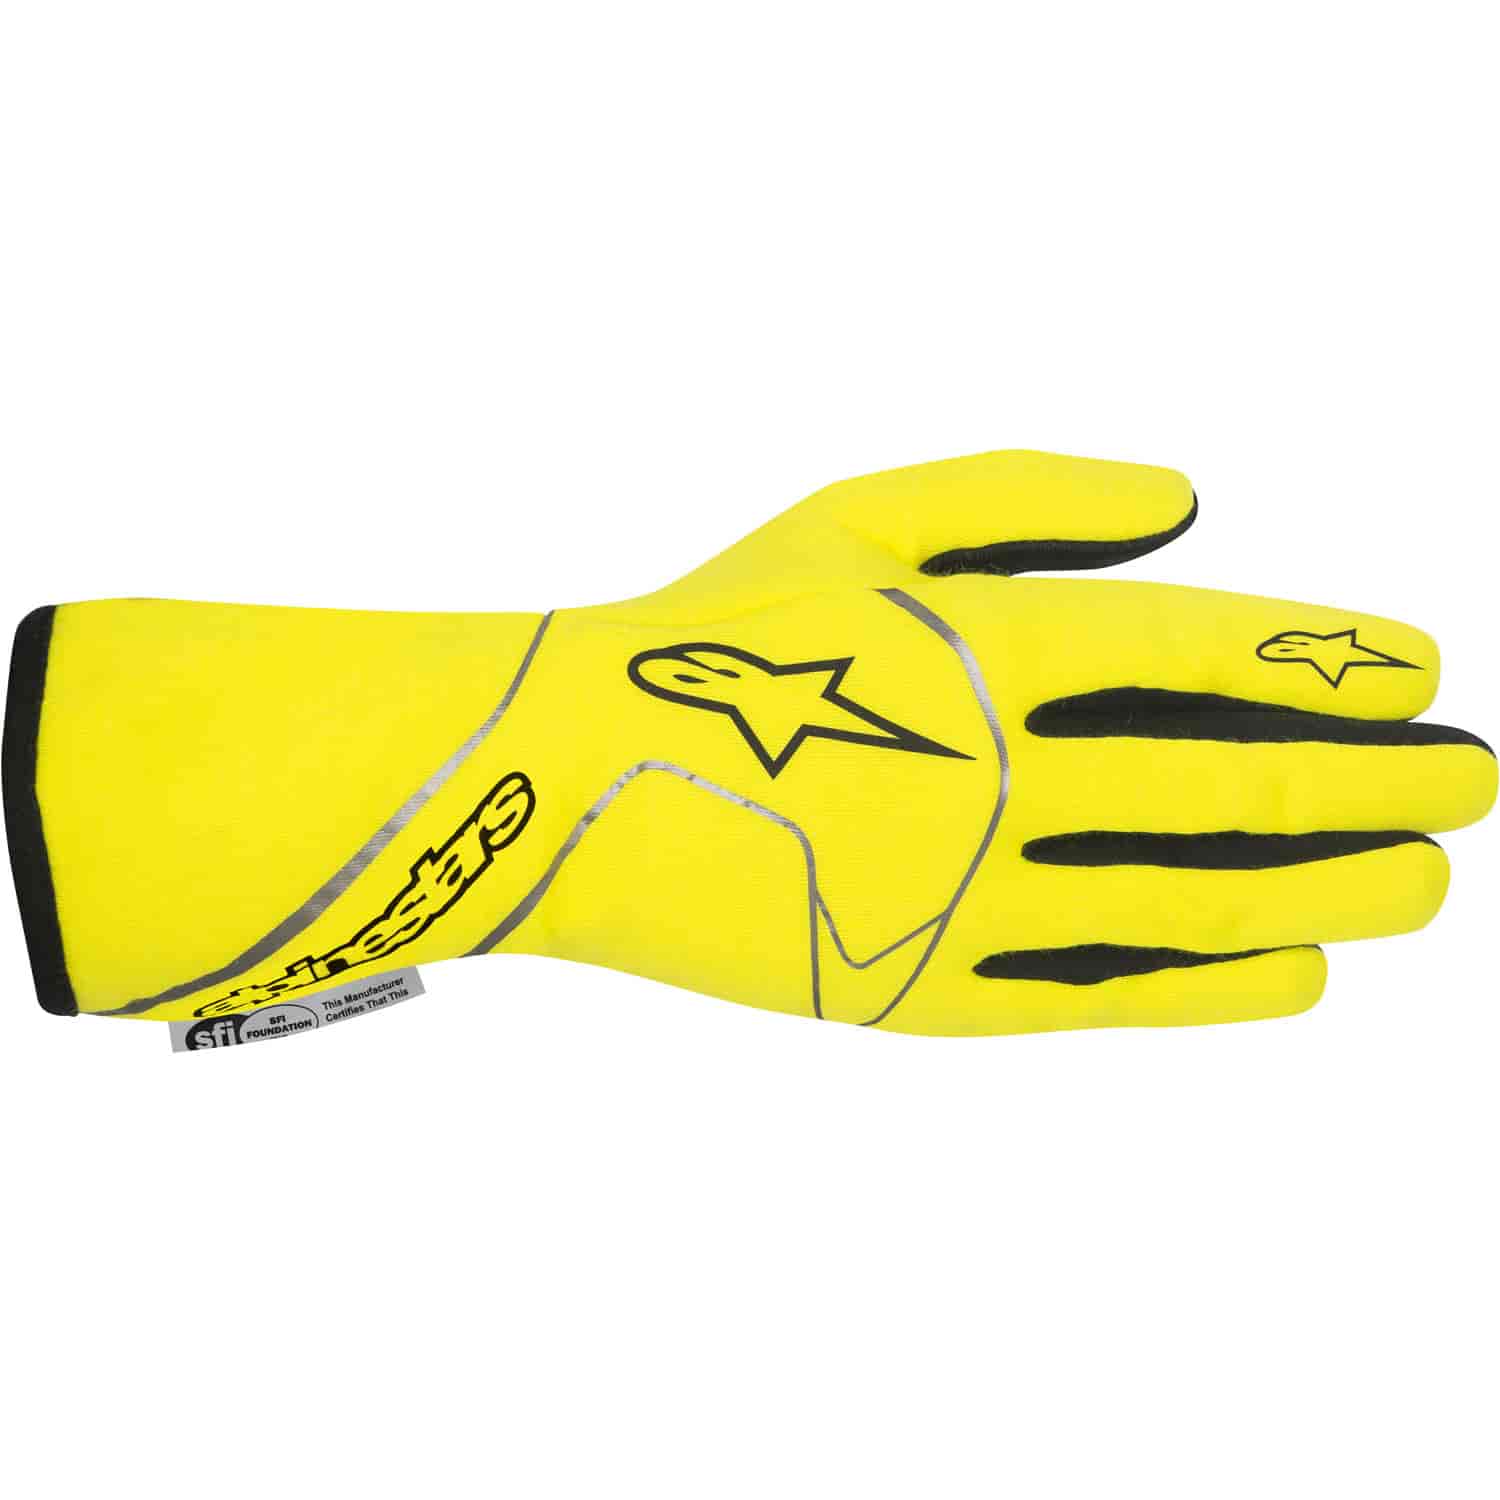 Tech 1 Race Gloves Yellow Fluorescent SFI 3.3/5